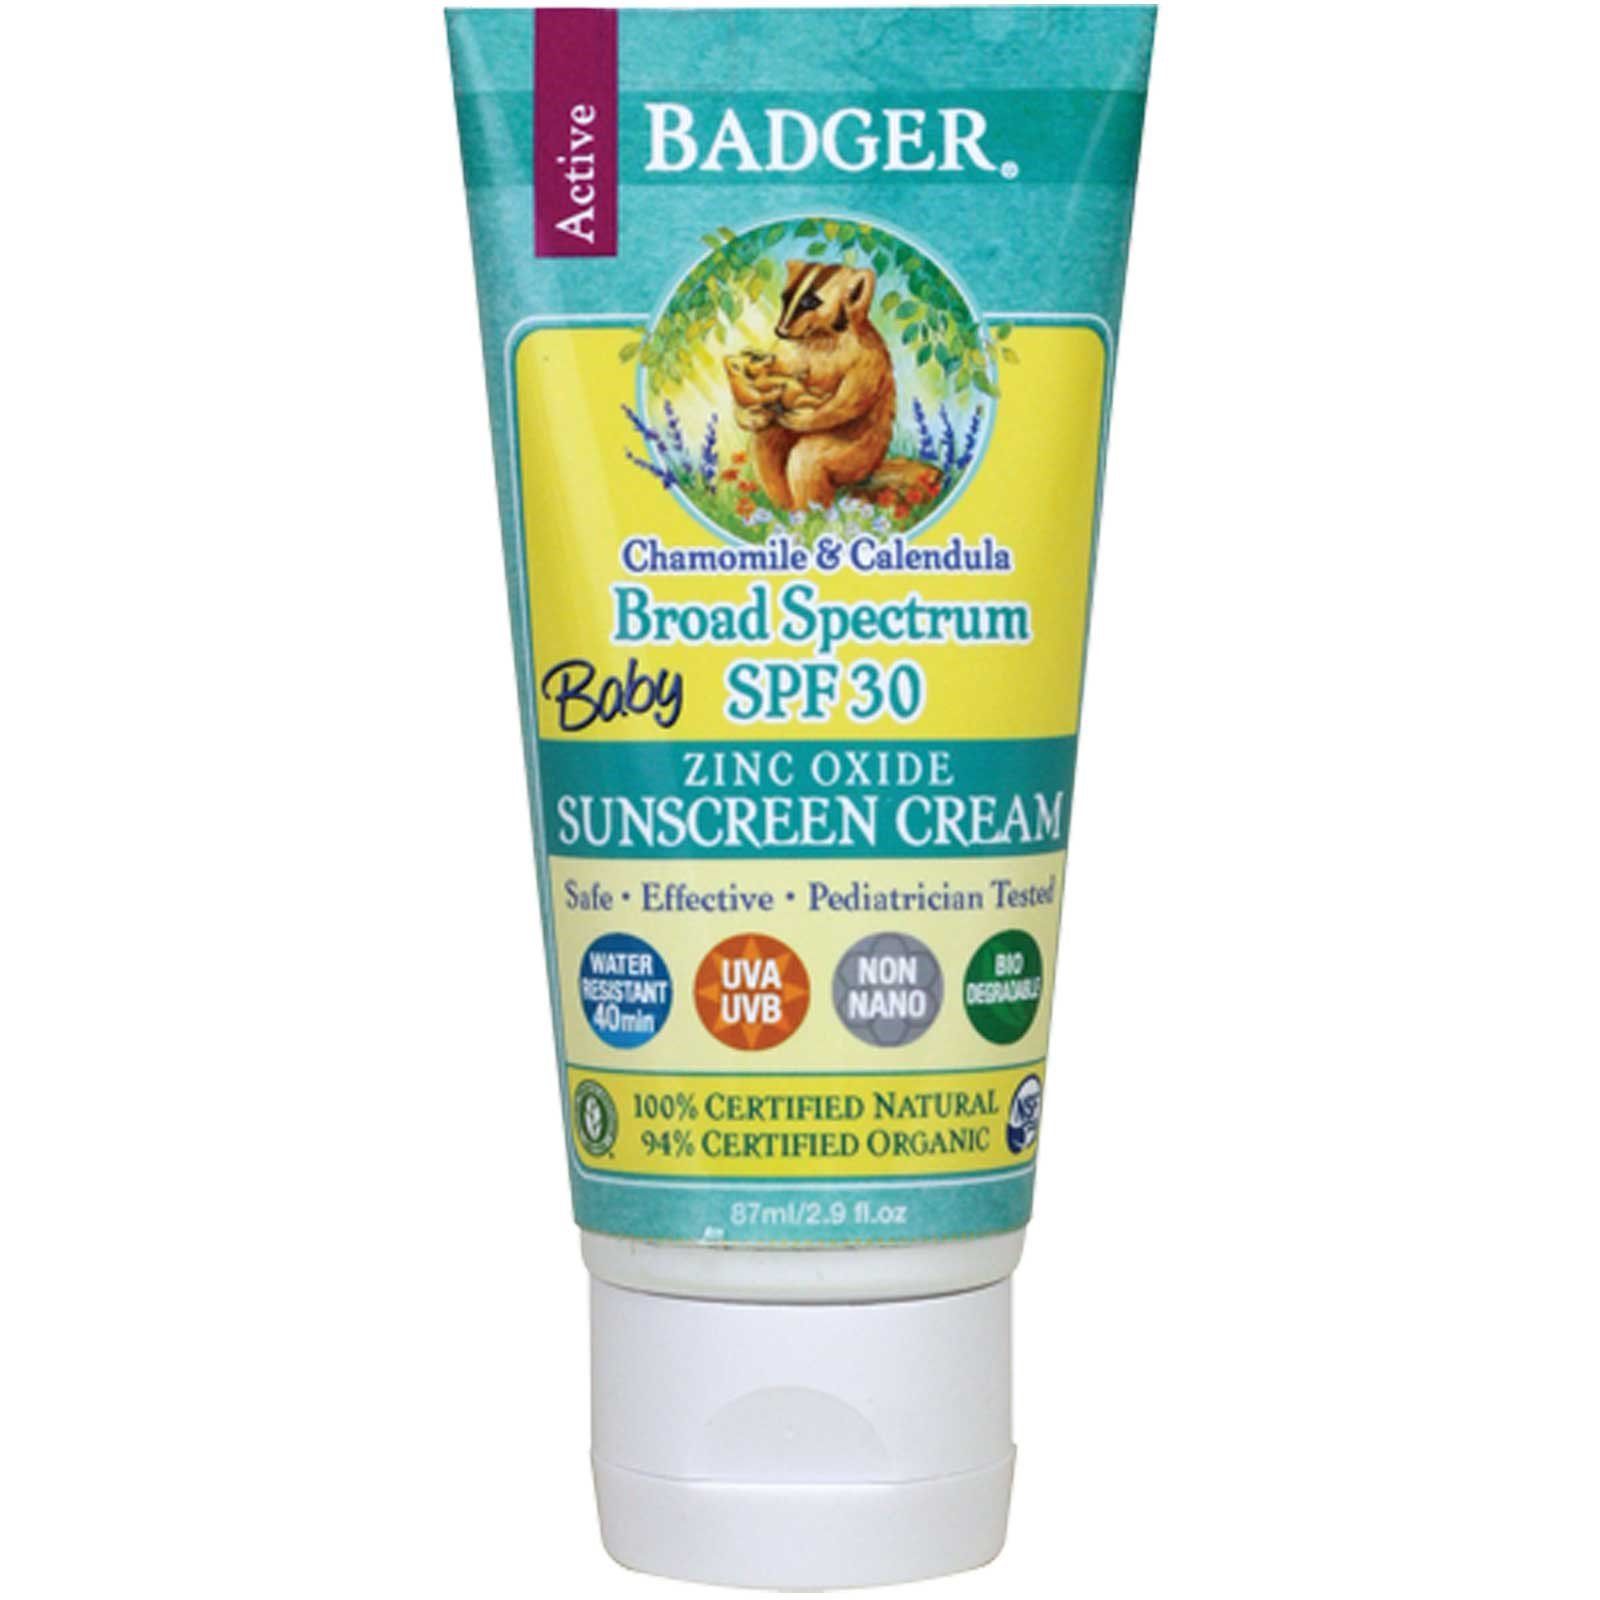 Солнцезащитный крем spf для детей. Badger солнцезащитный крем 30 SPF. Badger солнцезащитный крем для детей. БАДГЕР крем солнцезащитный для детей. Badger Company, Zinc Oxide Sunscreen Cream, SPF 30.